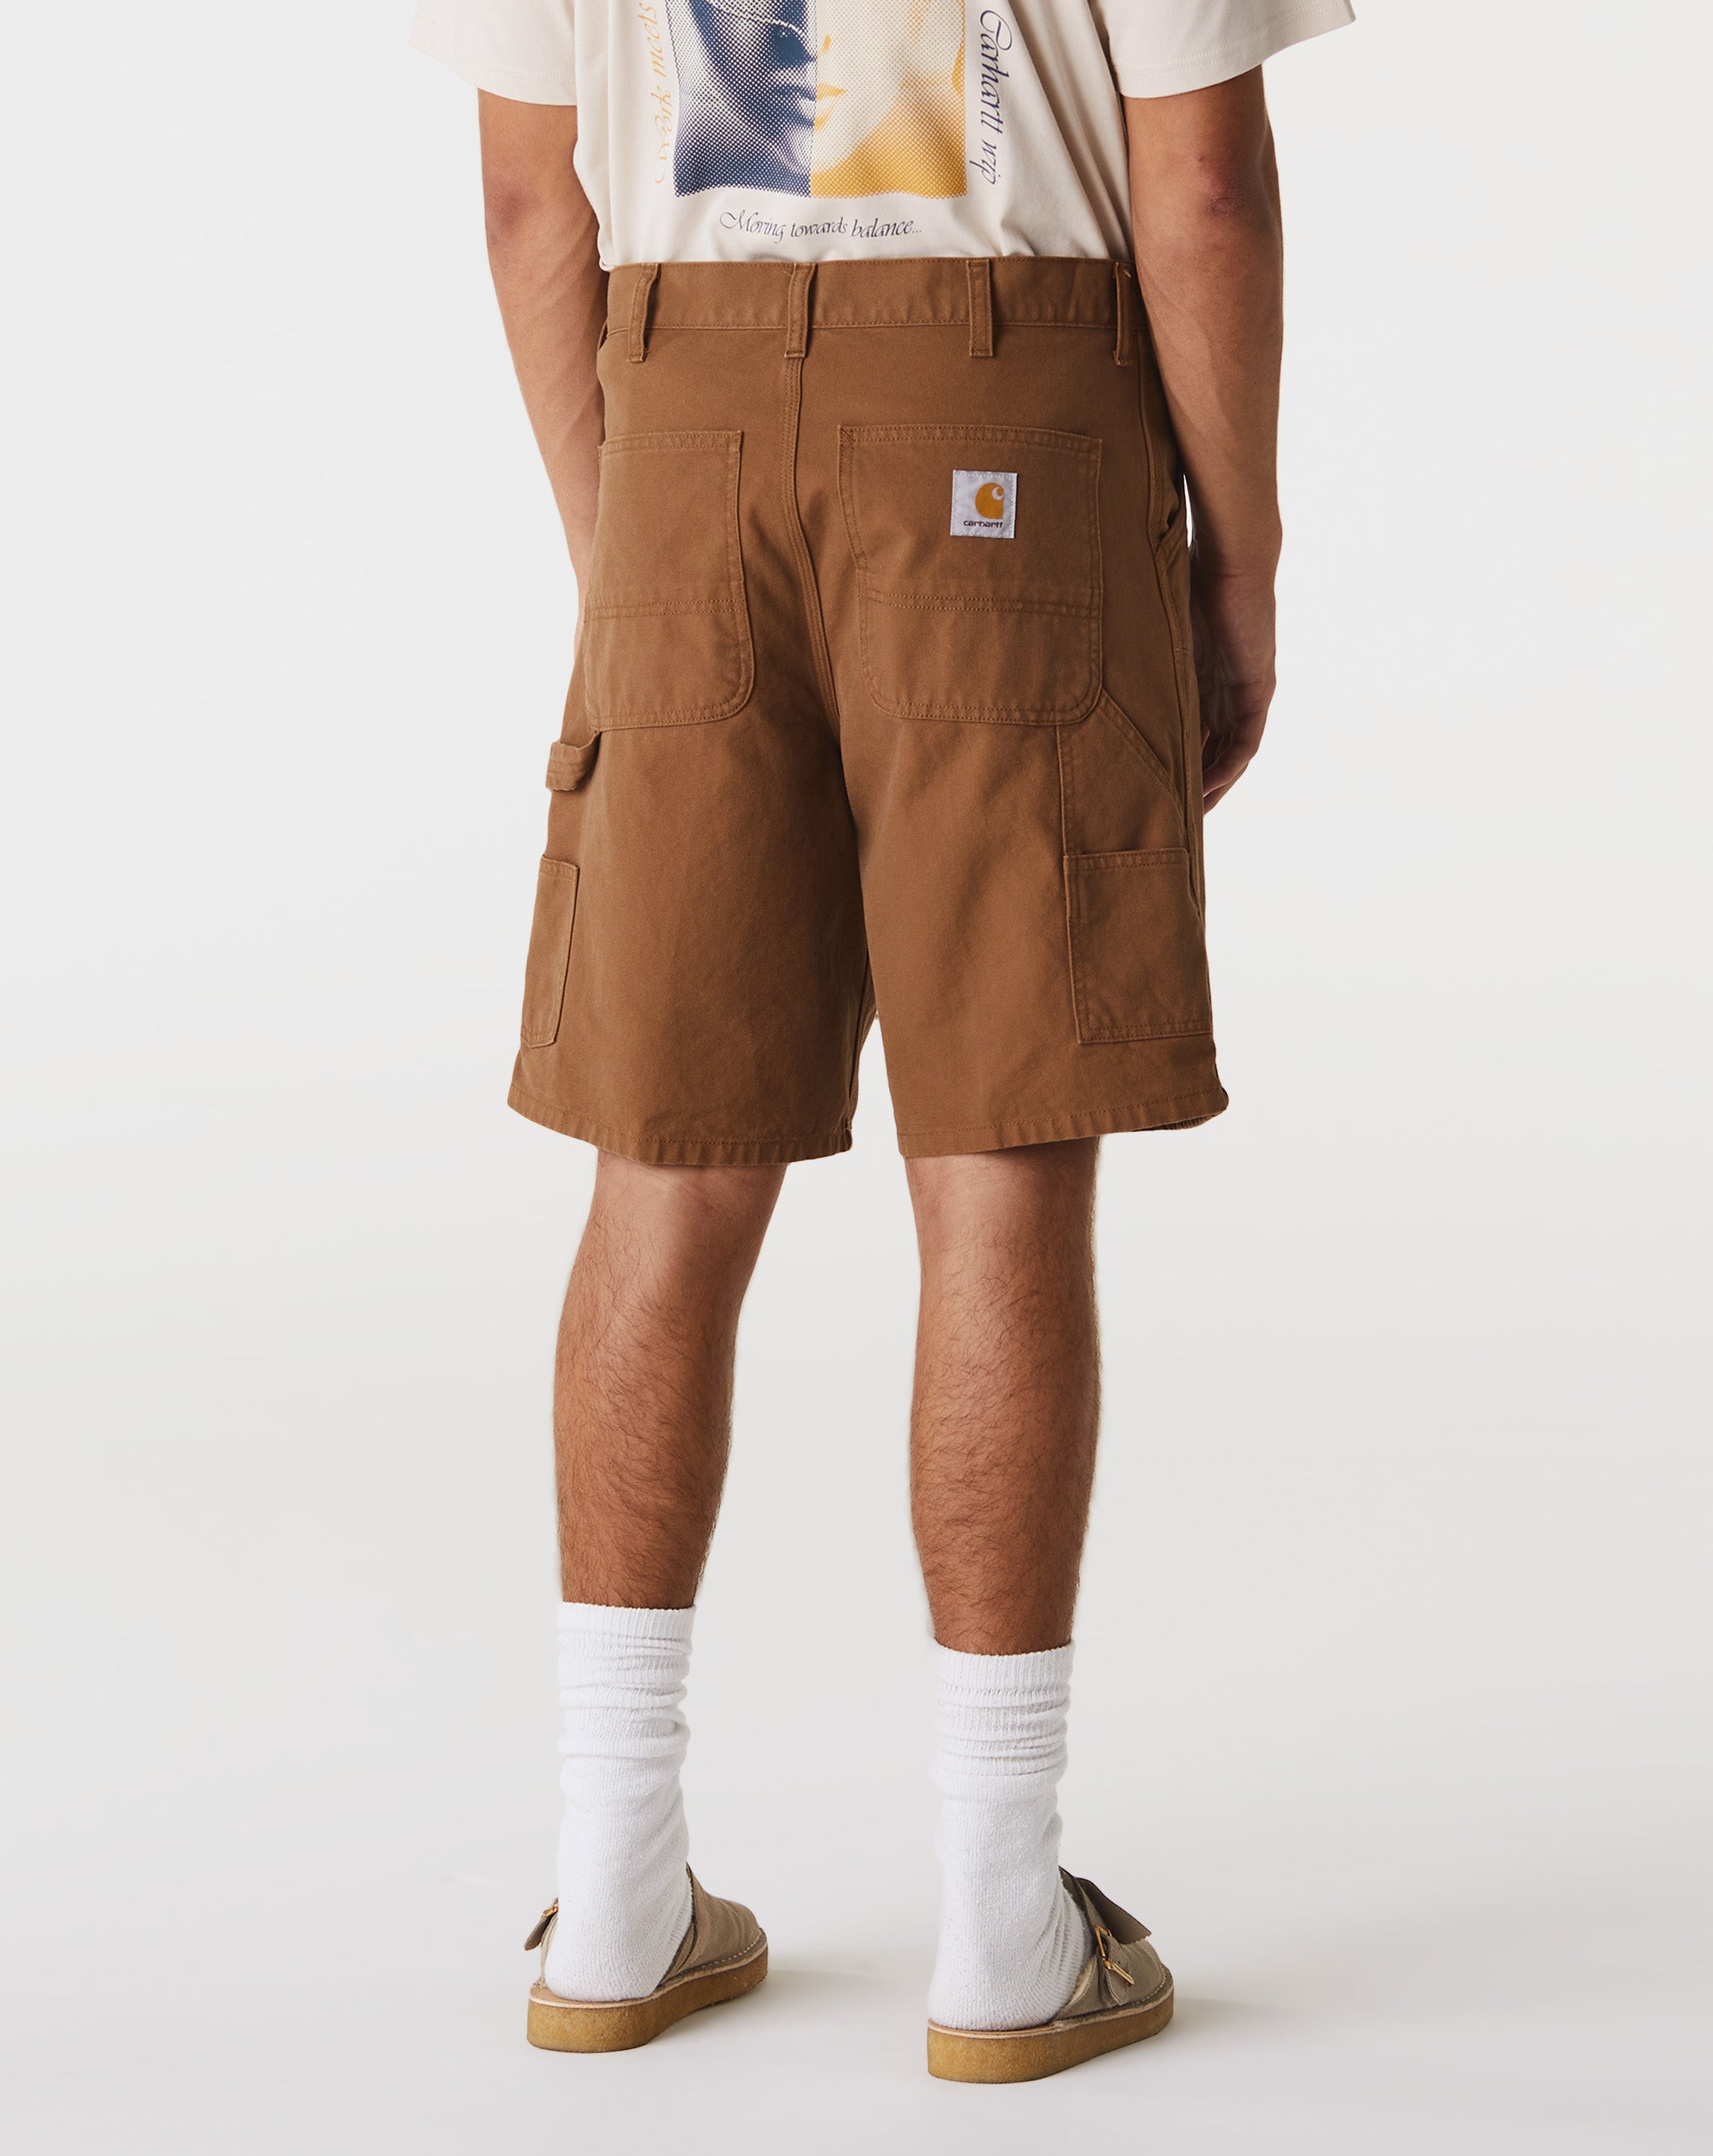 Carhartt WIP distressed denim shorts Grey  - Cheap Urlfreeze Jordan outlet